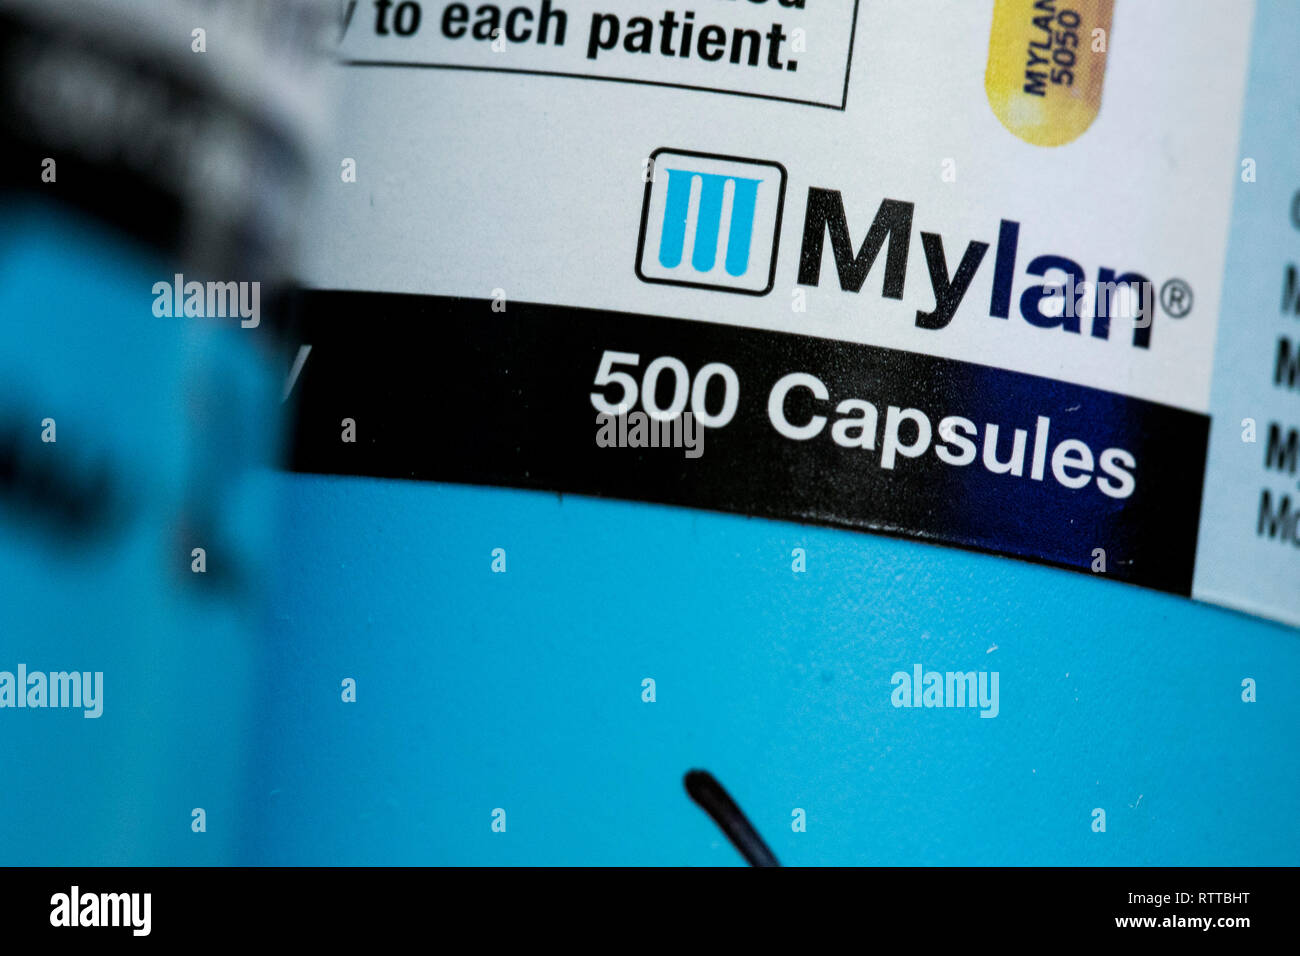 Un logo Mylan est vu sur l'emballage de produits pharmaceutiques sur ordonnance photographié dans une pharmacie. Banque D'Images